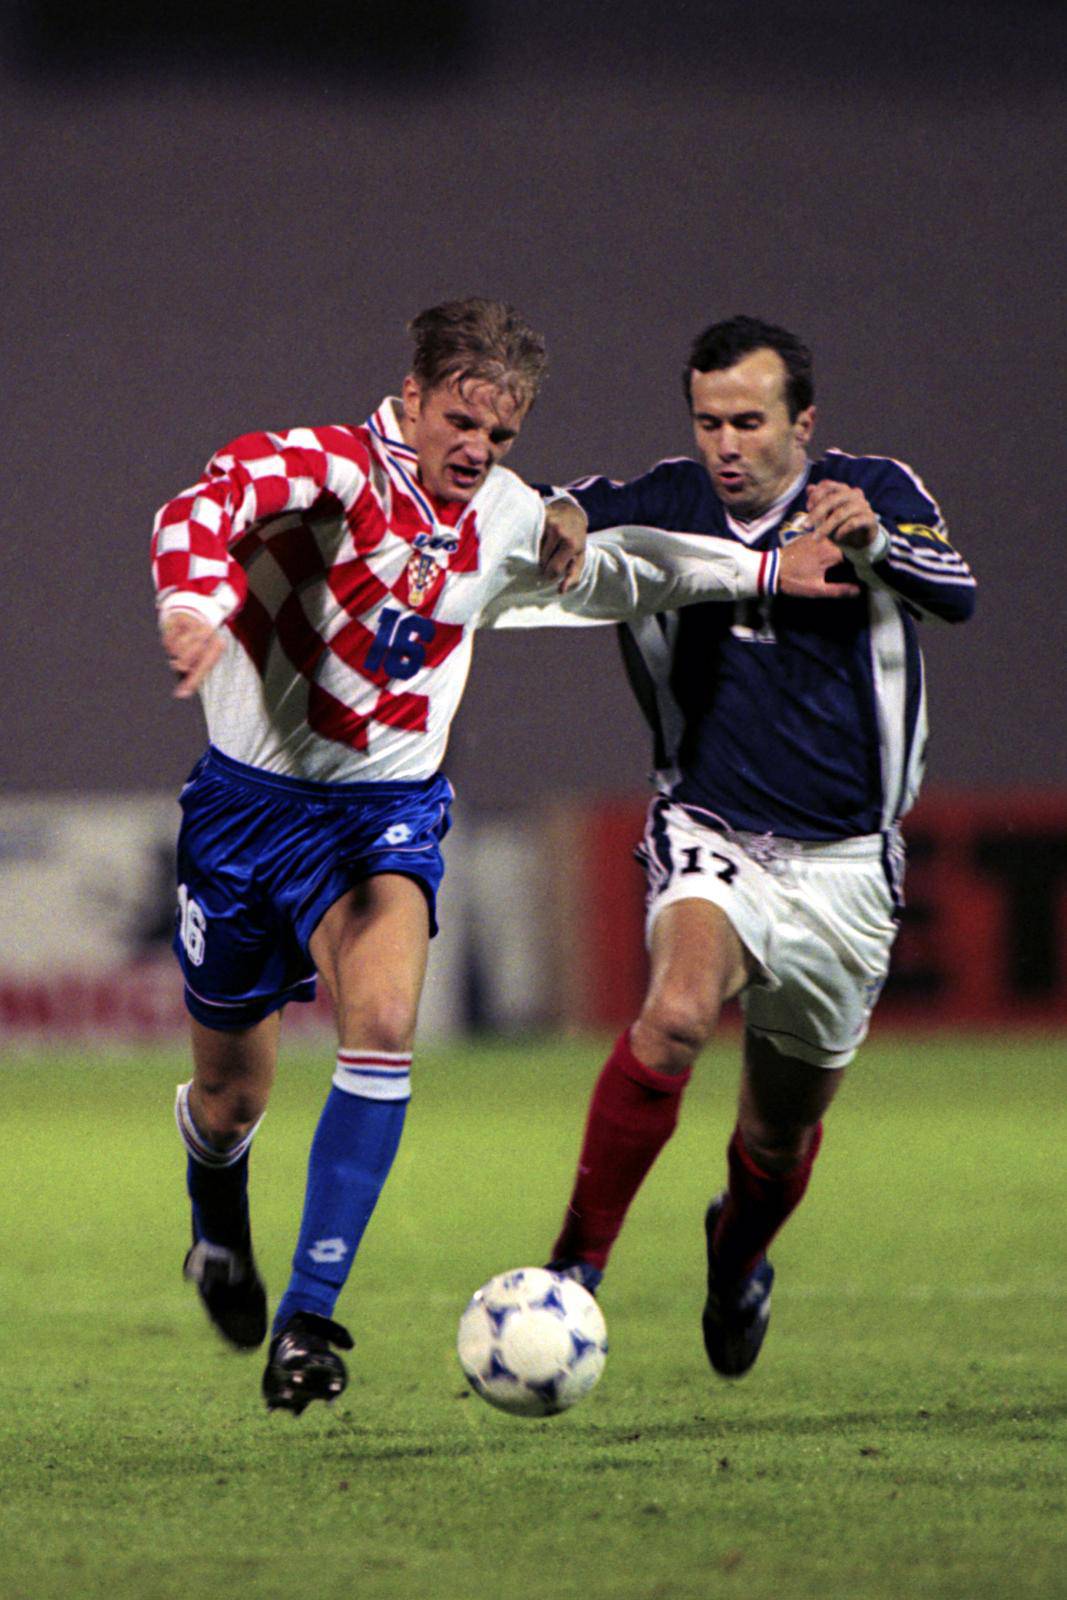 Zagreb: Kvalifikacije za EP u nogometu, Hrvatska - Jugoslavija, 9.10.1999.